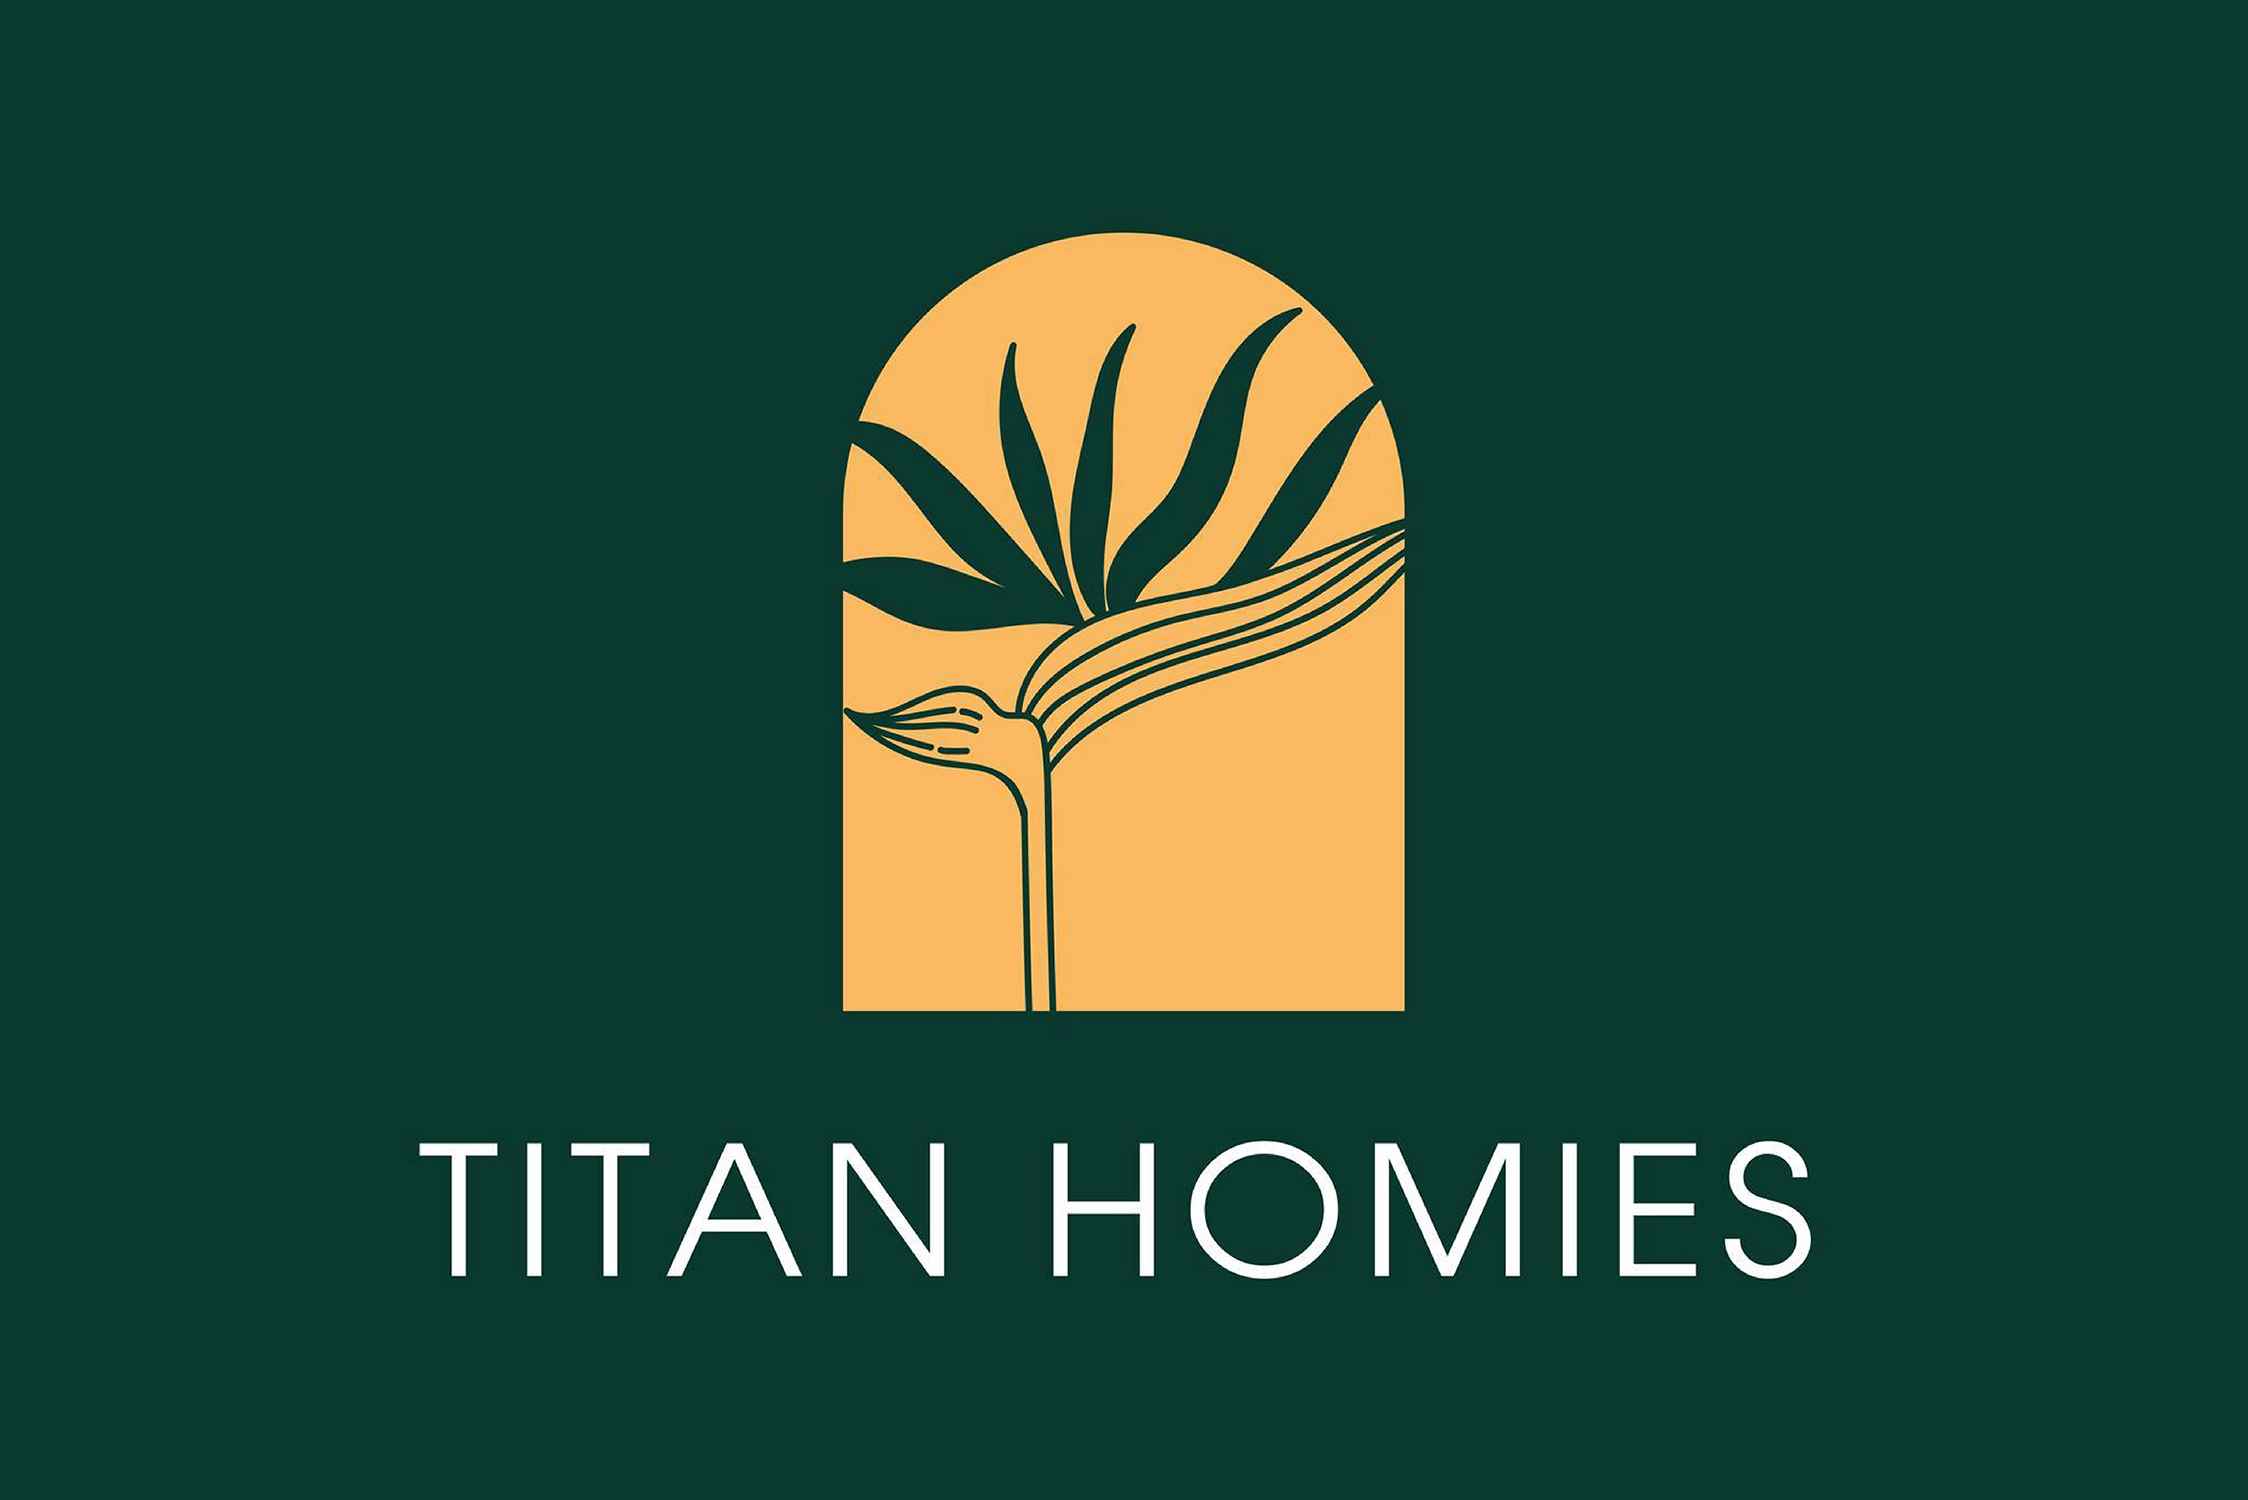 Titan Homies là đơn vị thành viên của Titan Group hoạt động trong lĩnh vực quản lý vận hành khách sạn & homestay